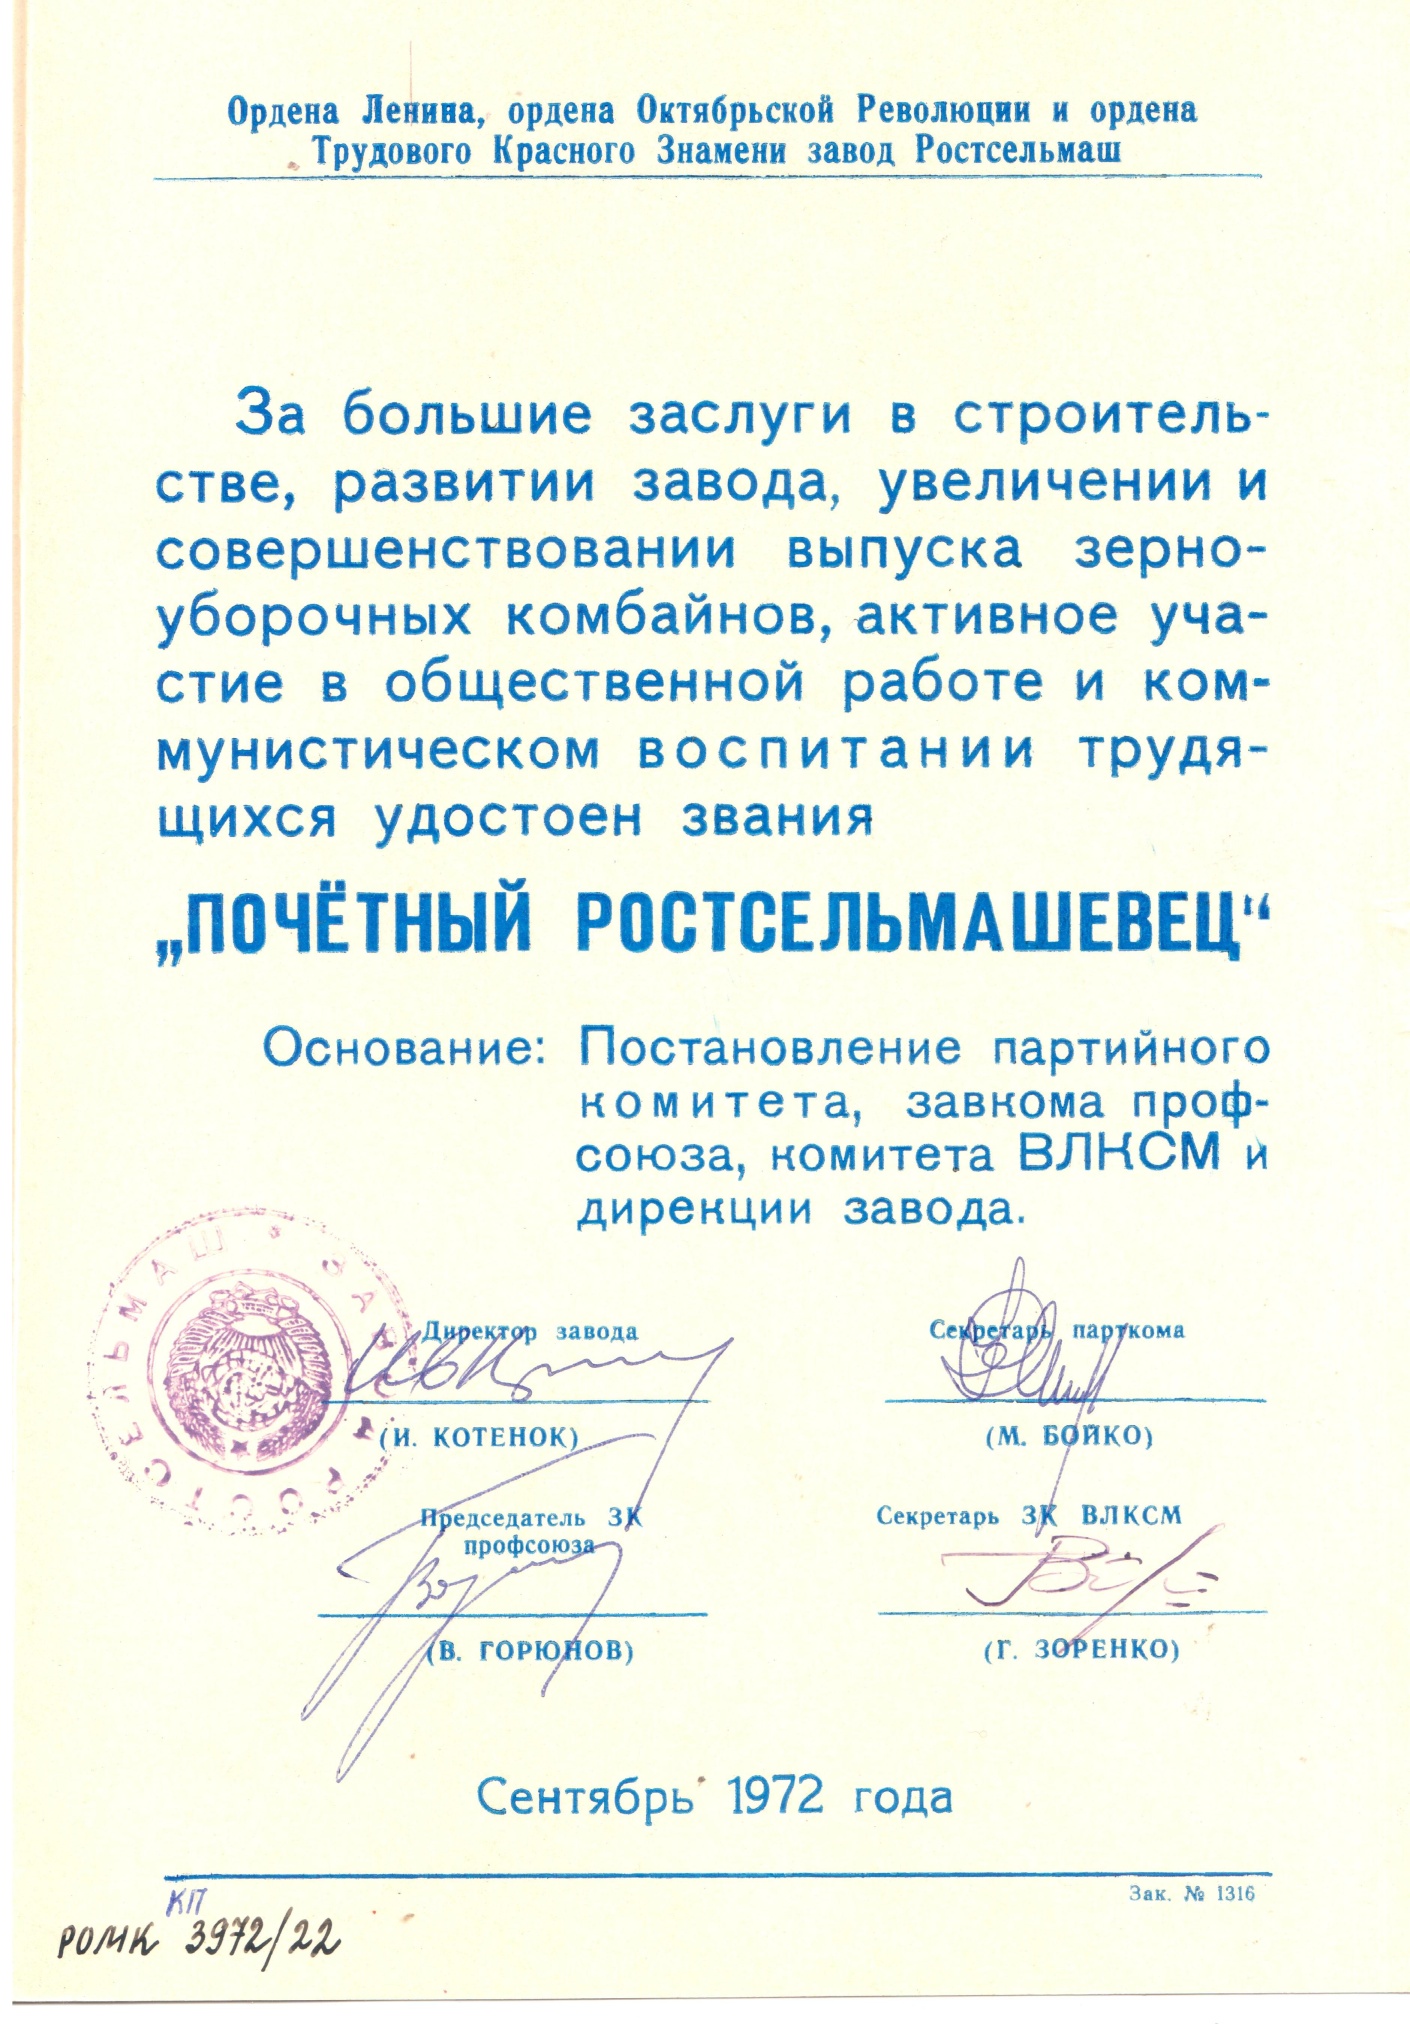 Свидетельство о присвоении звания «Почётный ростсельмашевец» Колесникову П.К. сентябрь 1972 г.